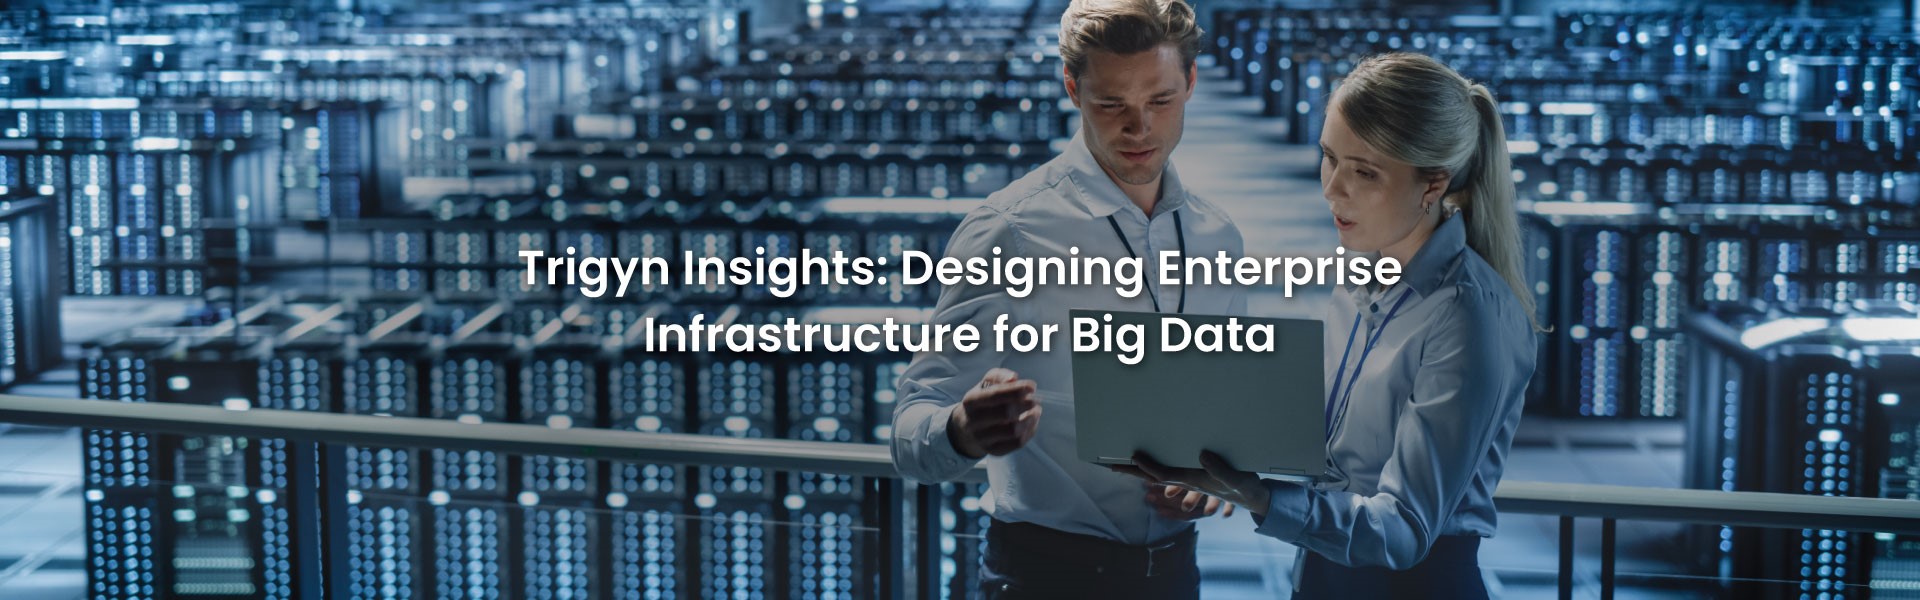 Enterprise Infrastructure for Big Data